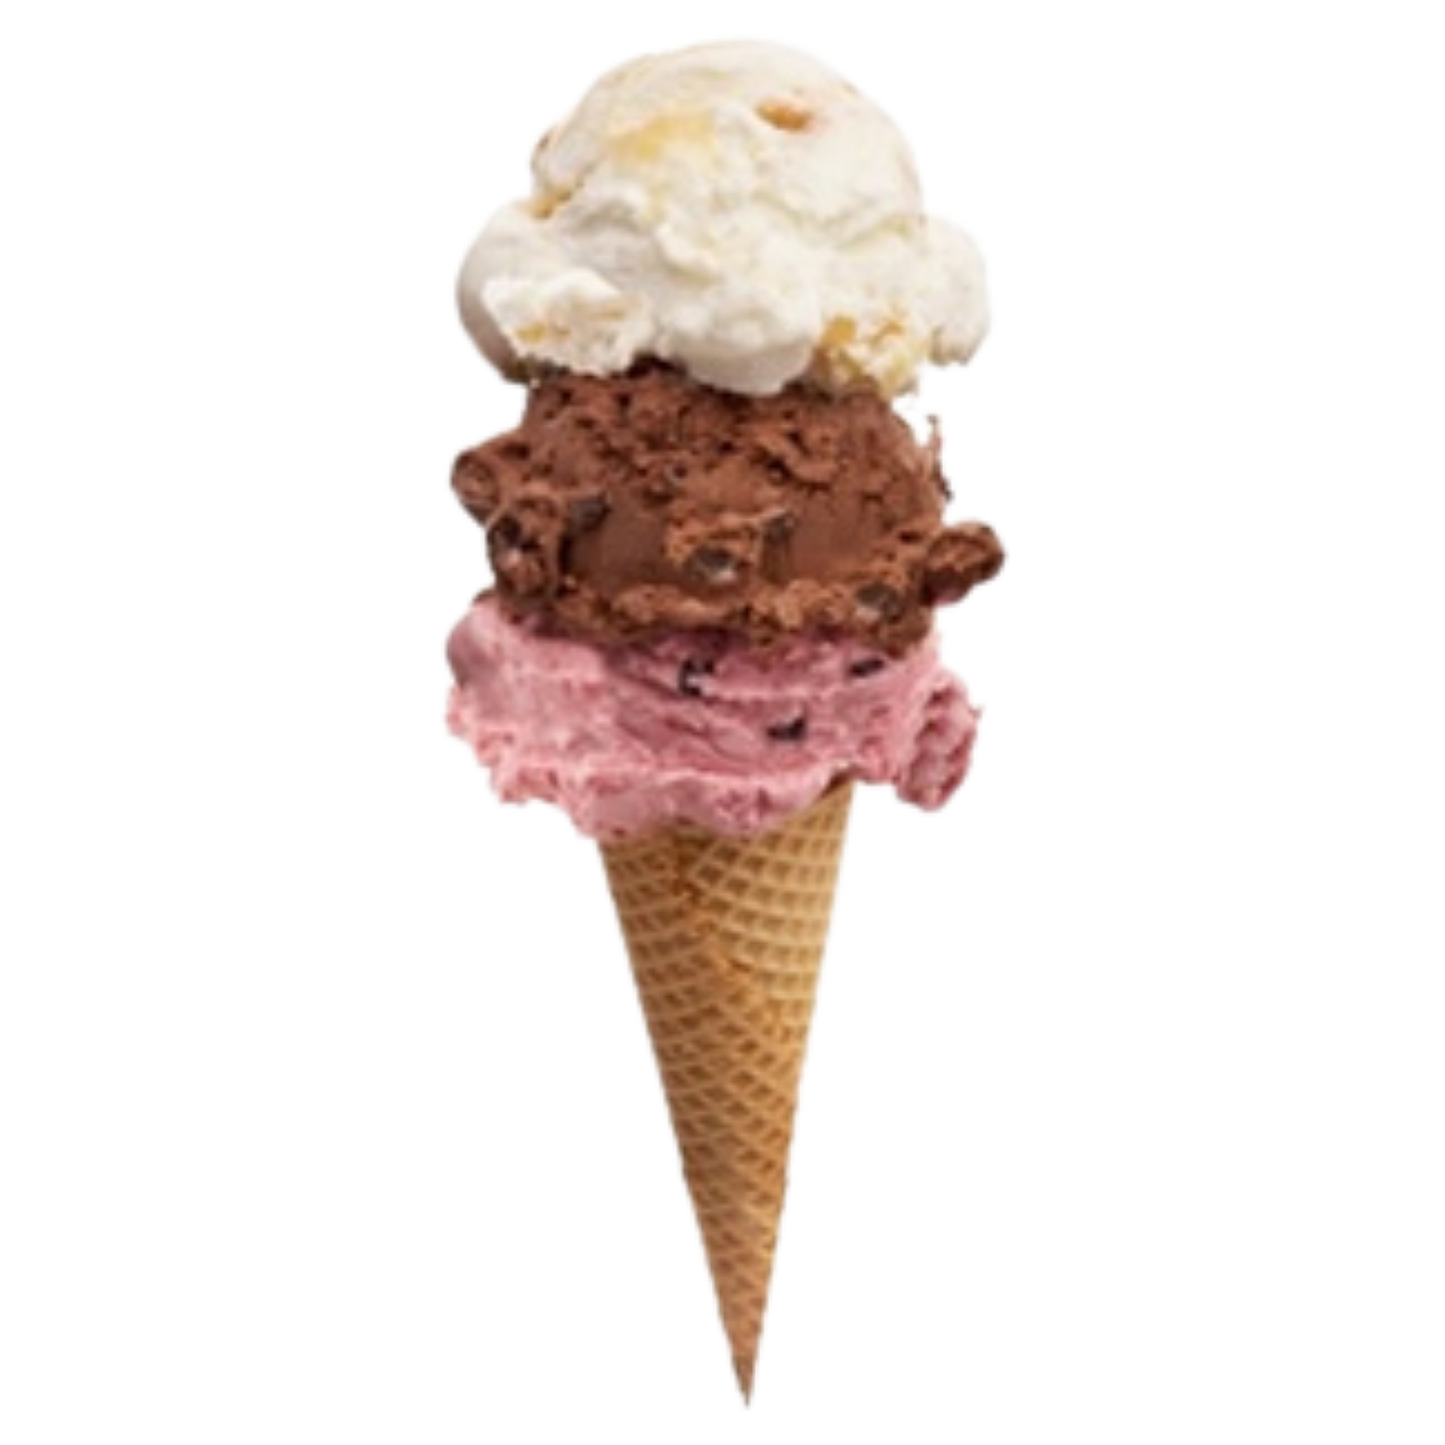 Ice cream sugar cone